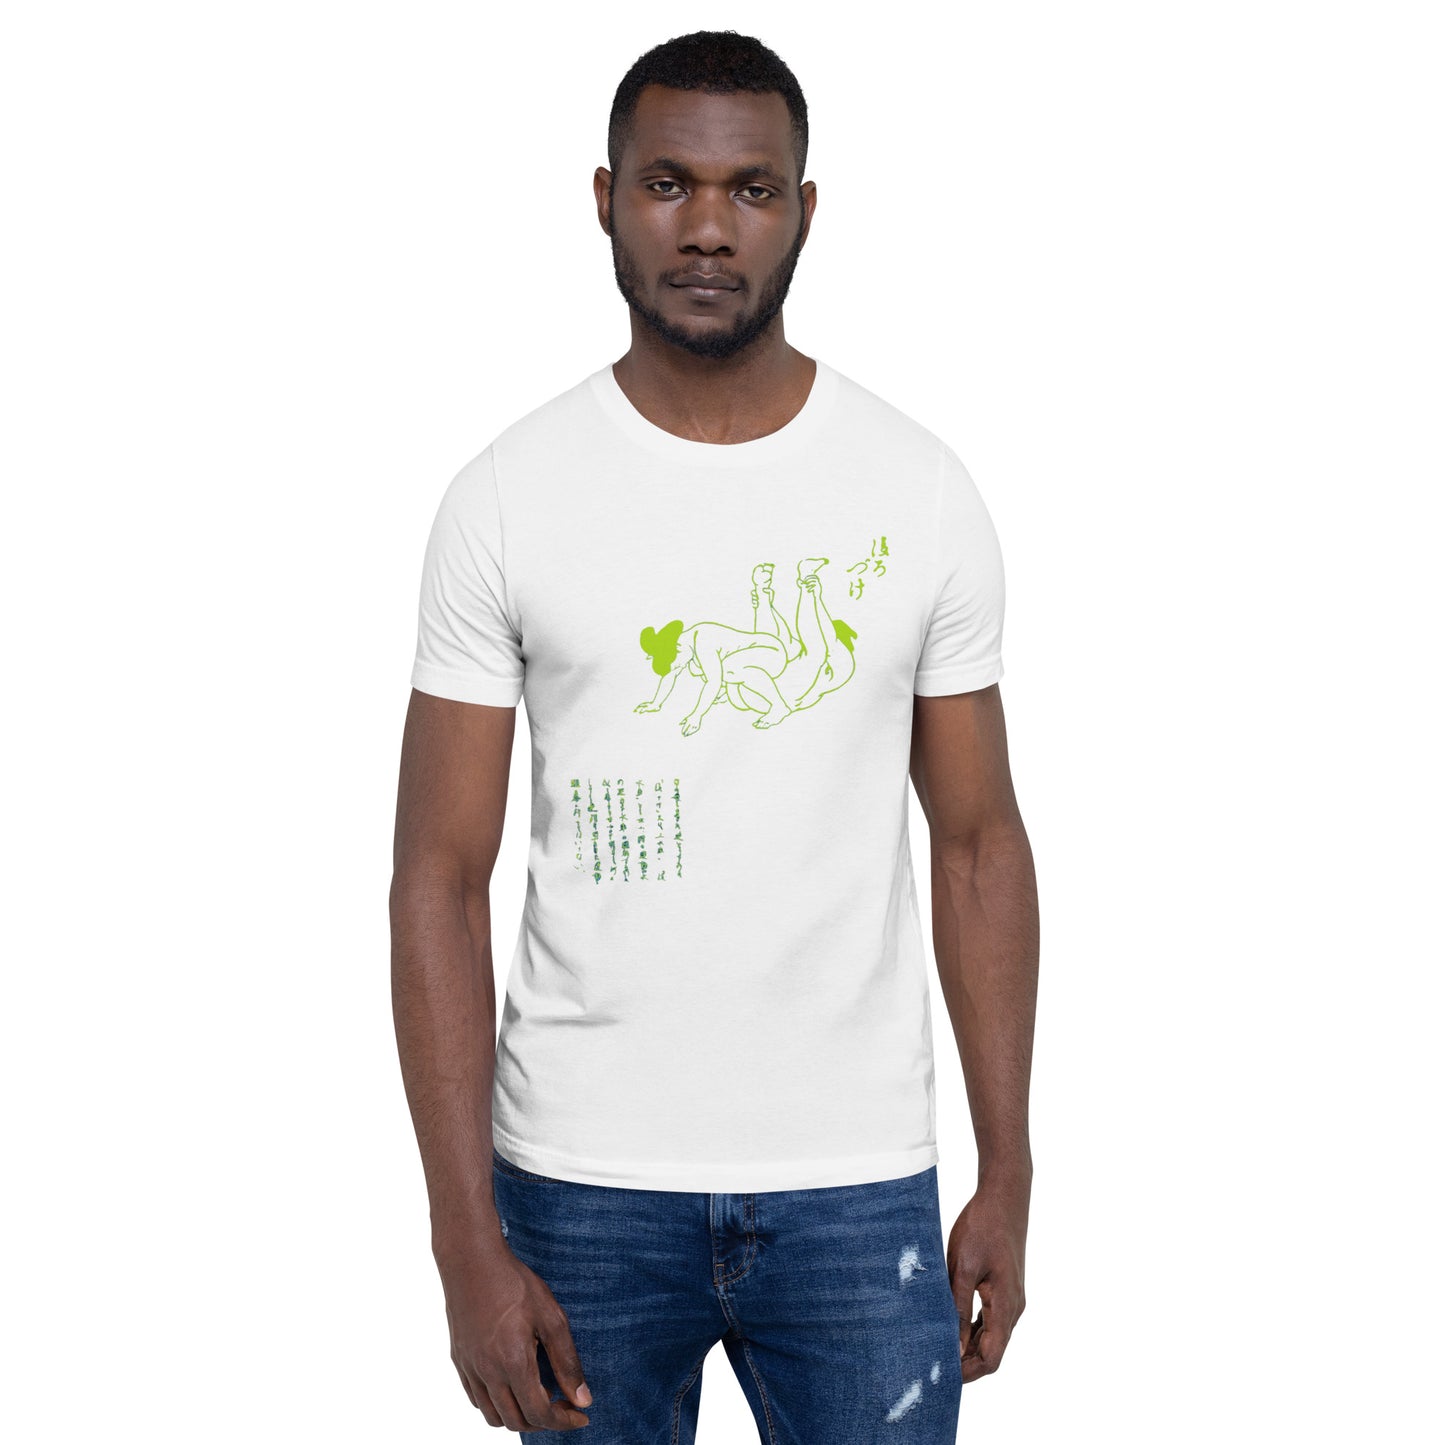 Unisex t-shirt "55 USHIROZUKE" White